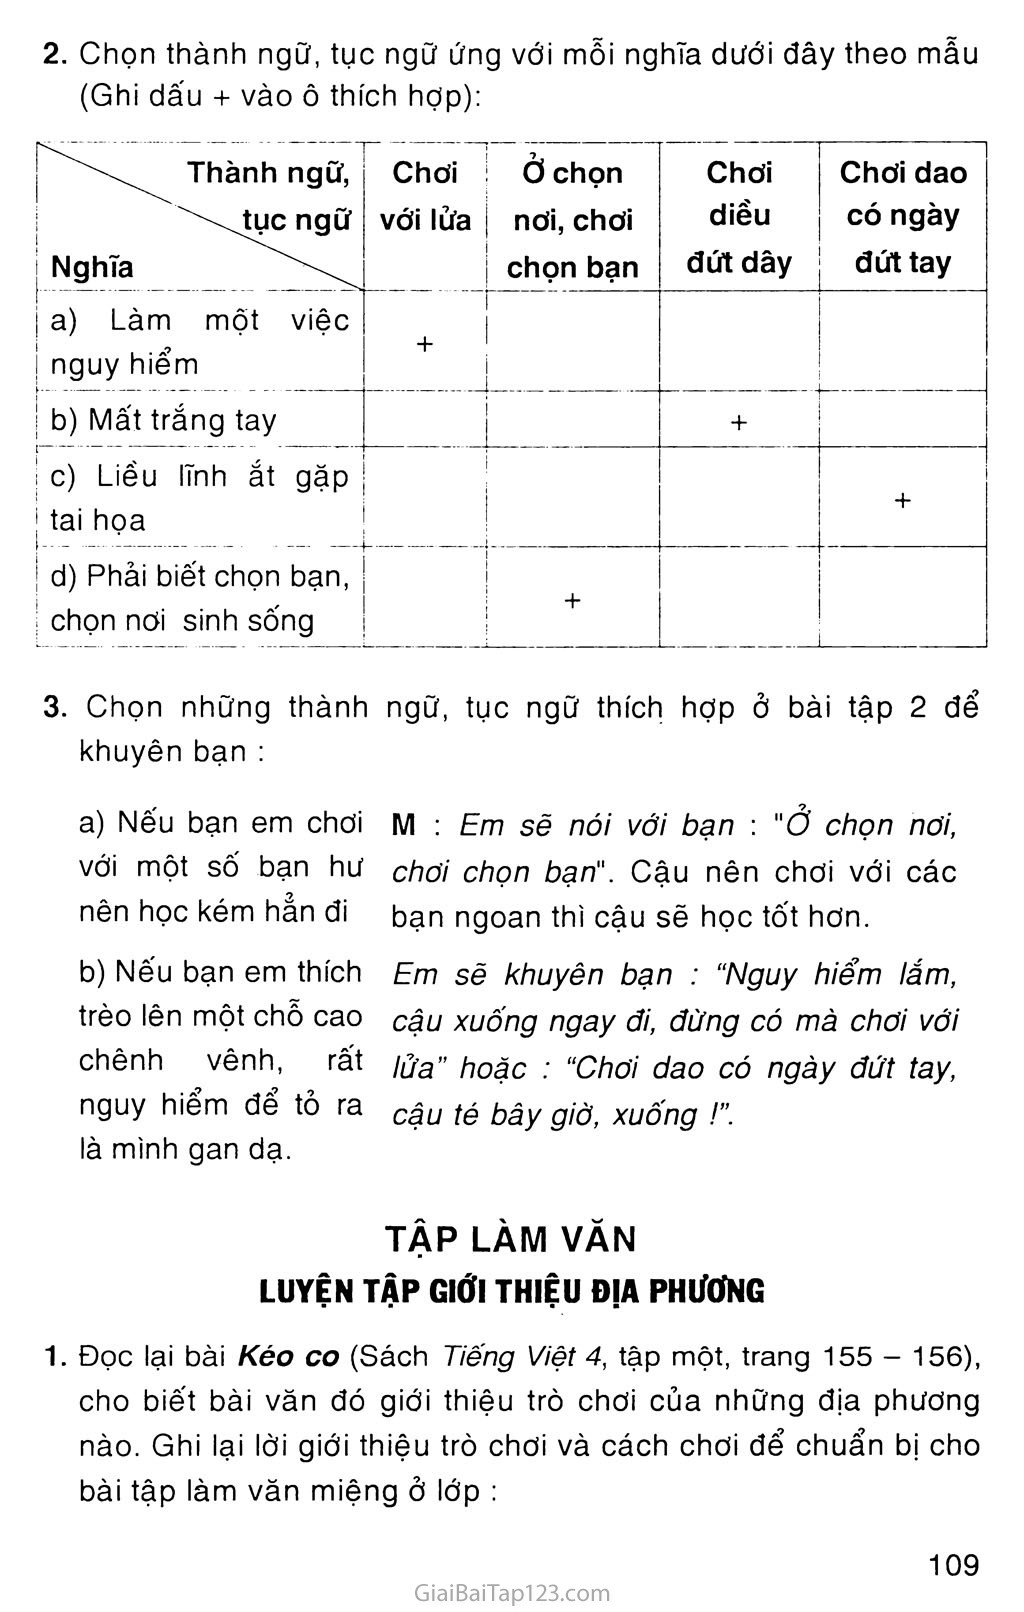 Giải Vở Bài Tập Tiếng Việt Lớp 4 Tập 1 Tuần 16